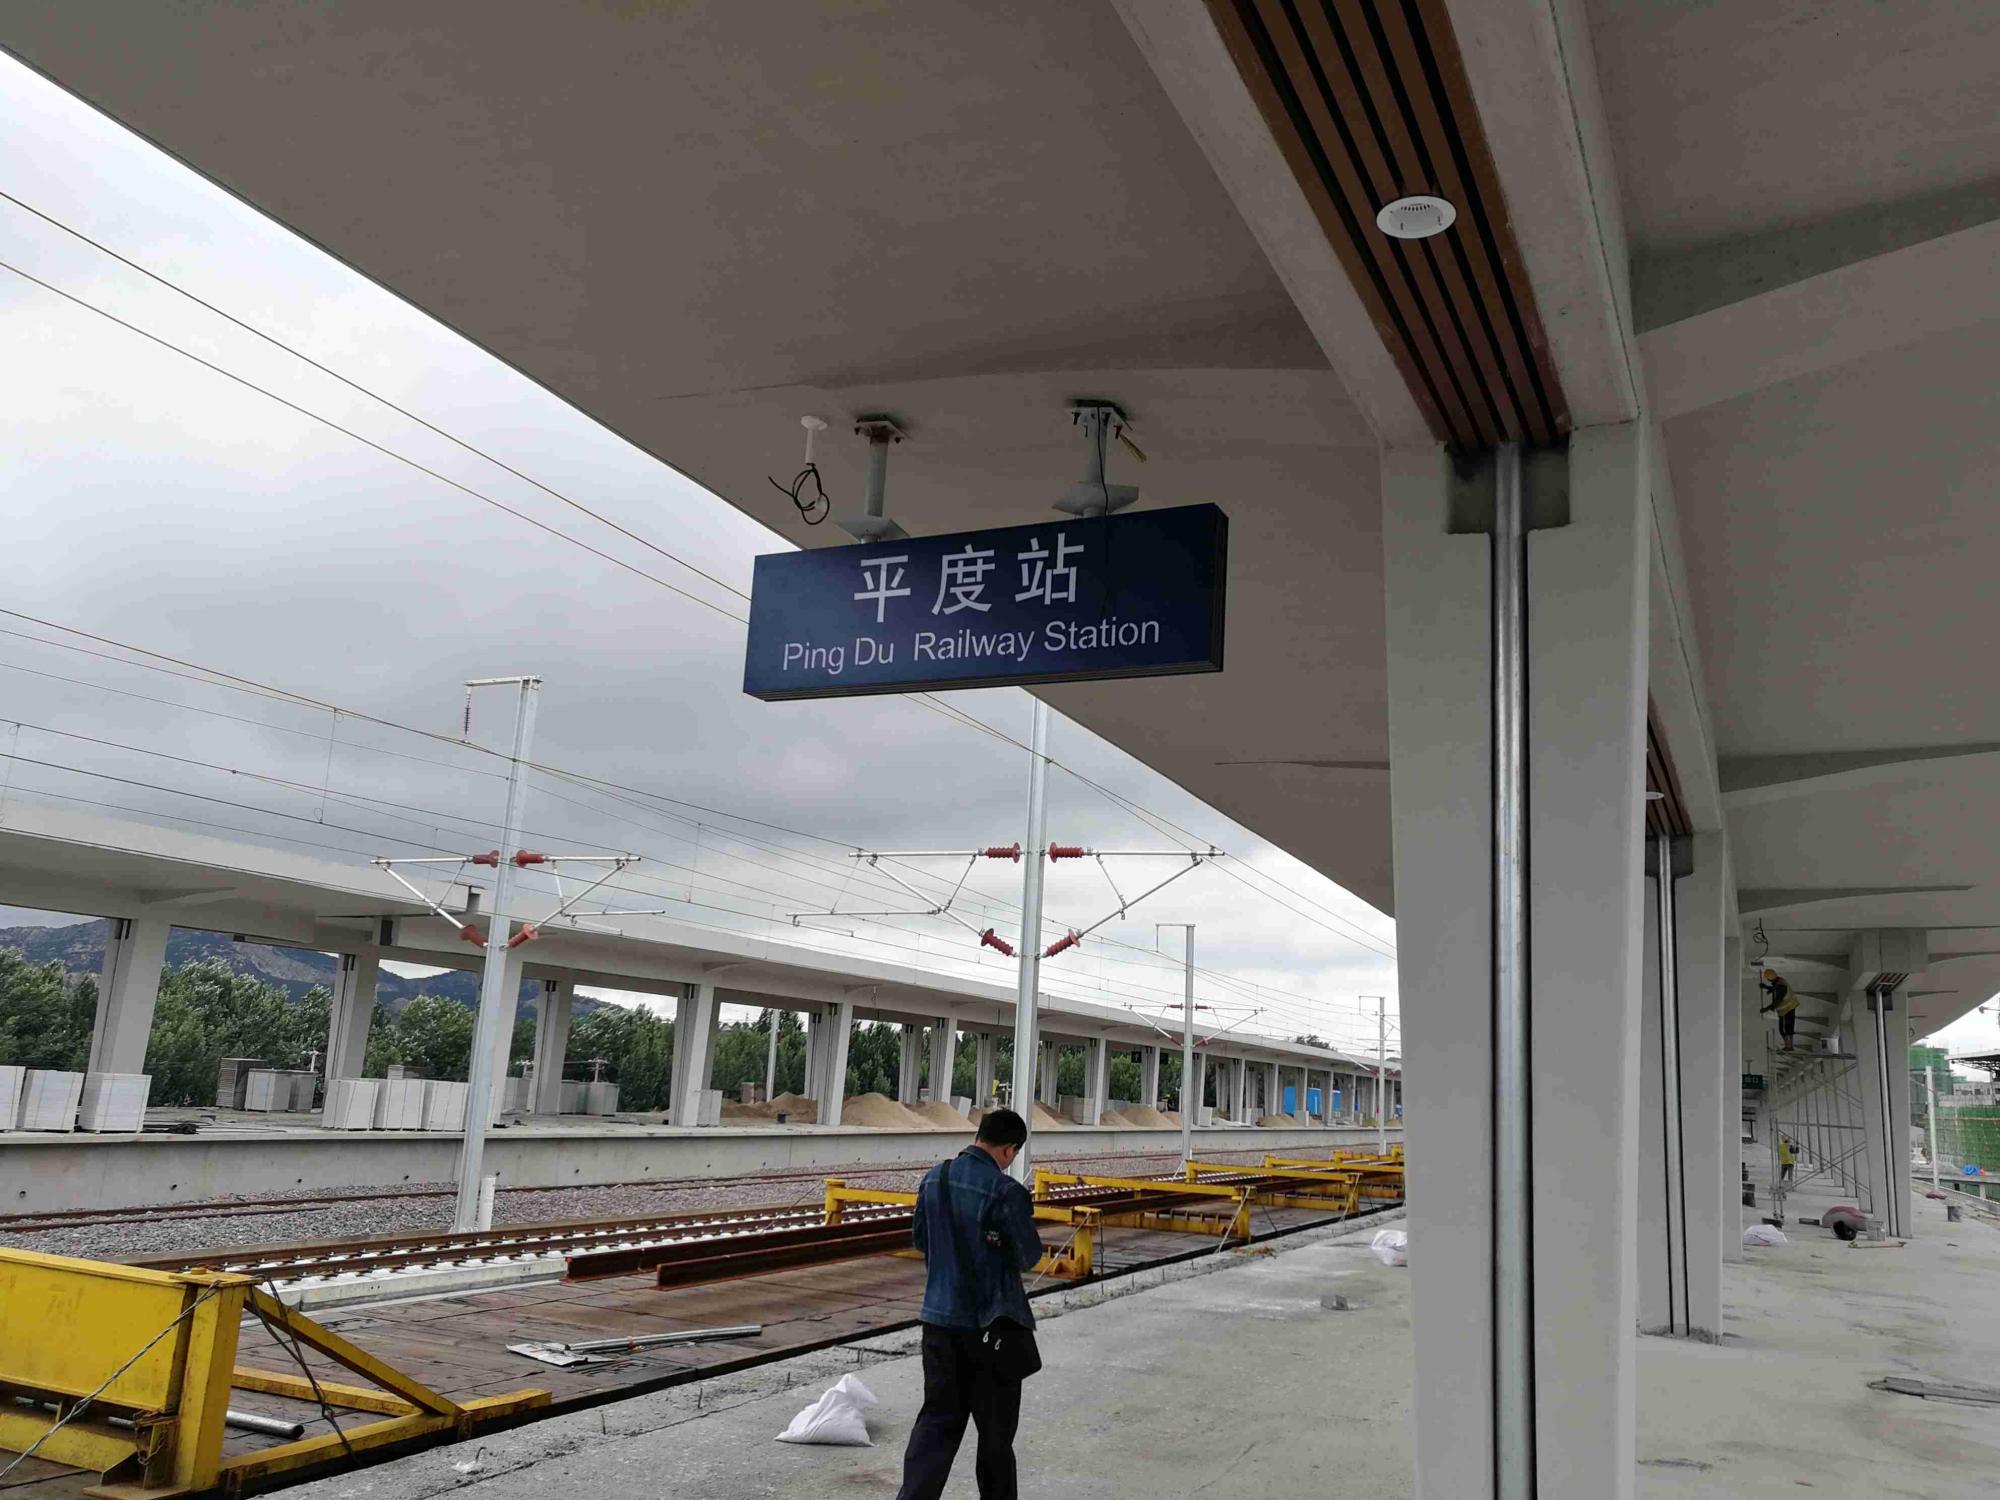 (在2020年6月20日后,原海青铁路平度站修改为平度西站,原潍莱高铁